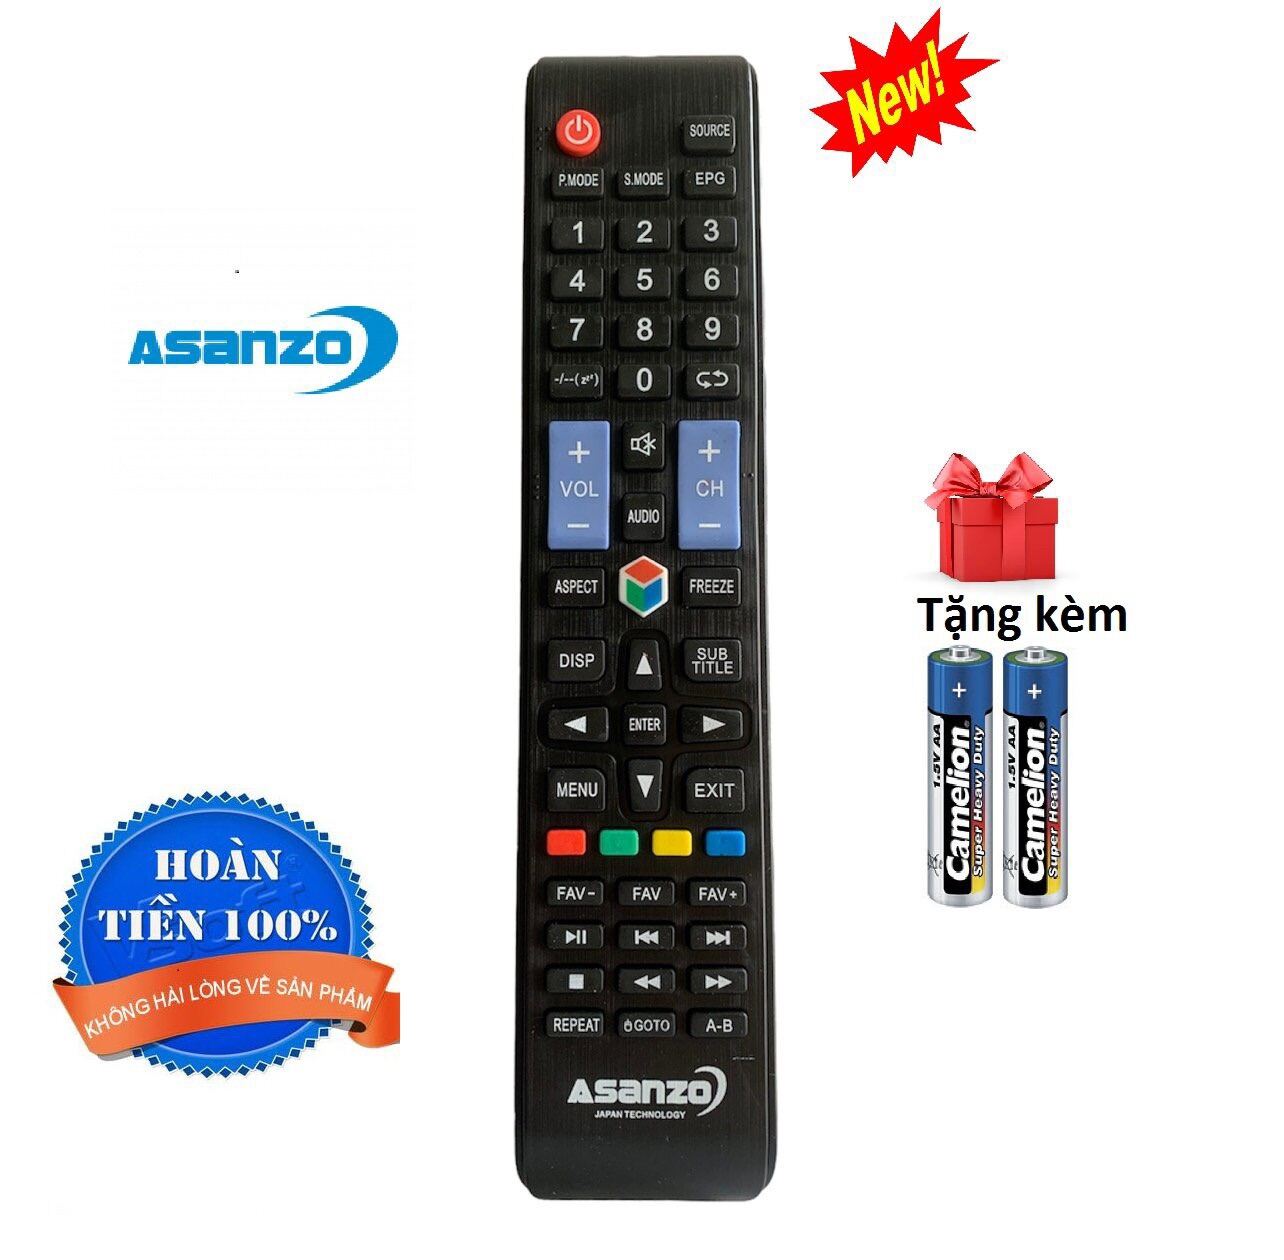 Điều khiển tivi Asanzo Smart TV hàng sịn theo máy các dòng 29T800, ES32T890